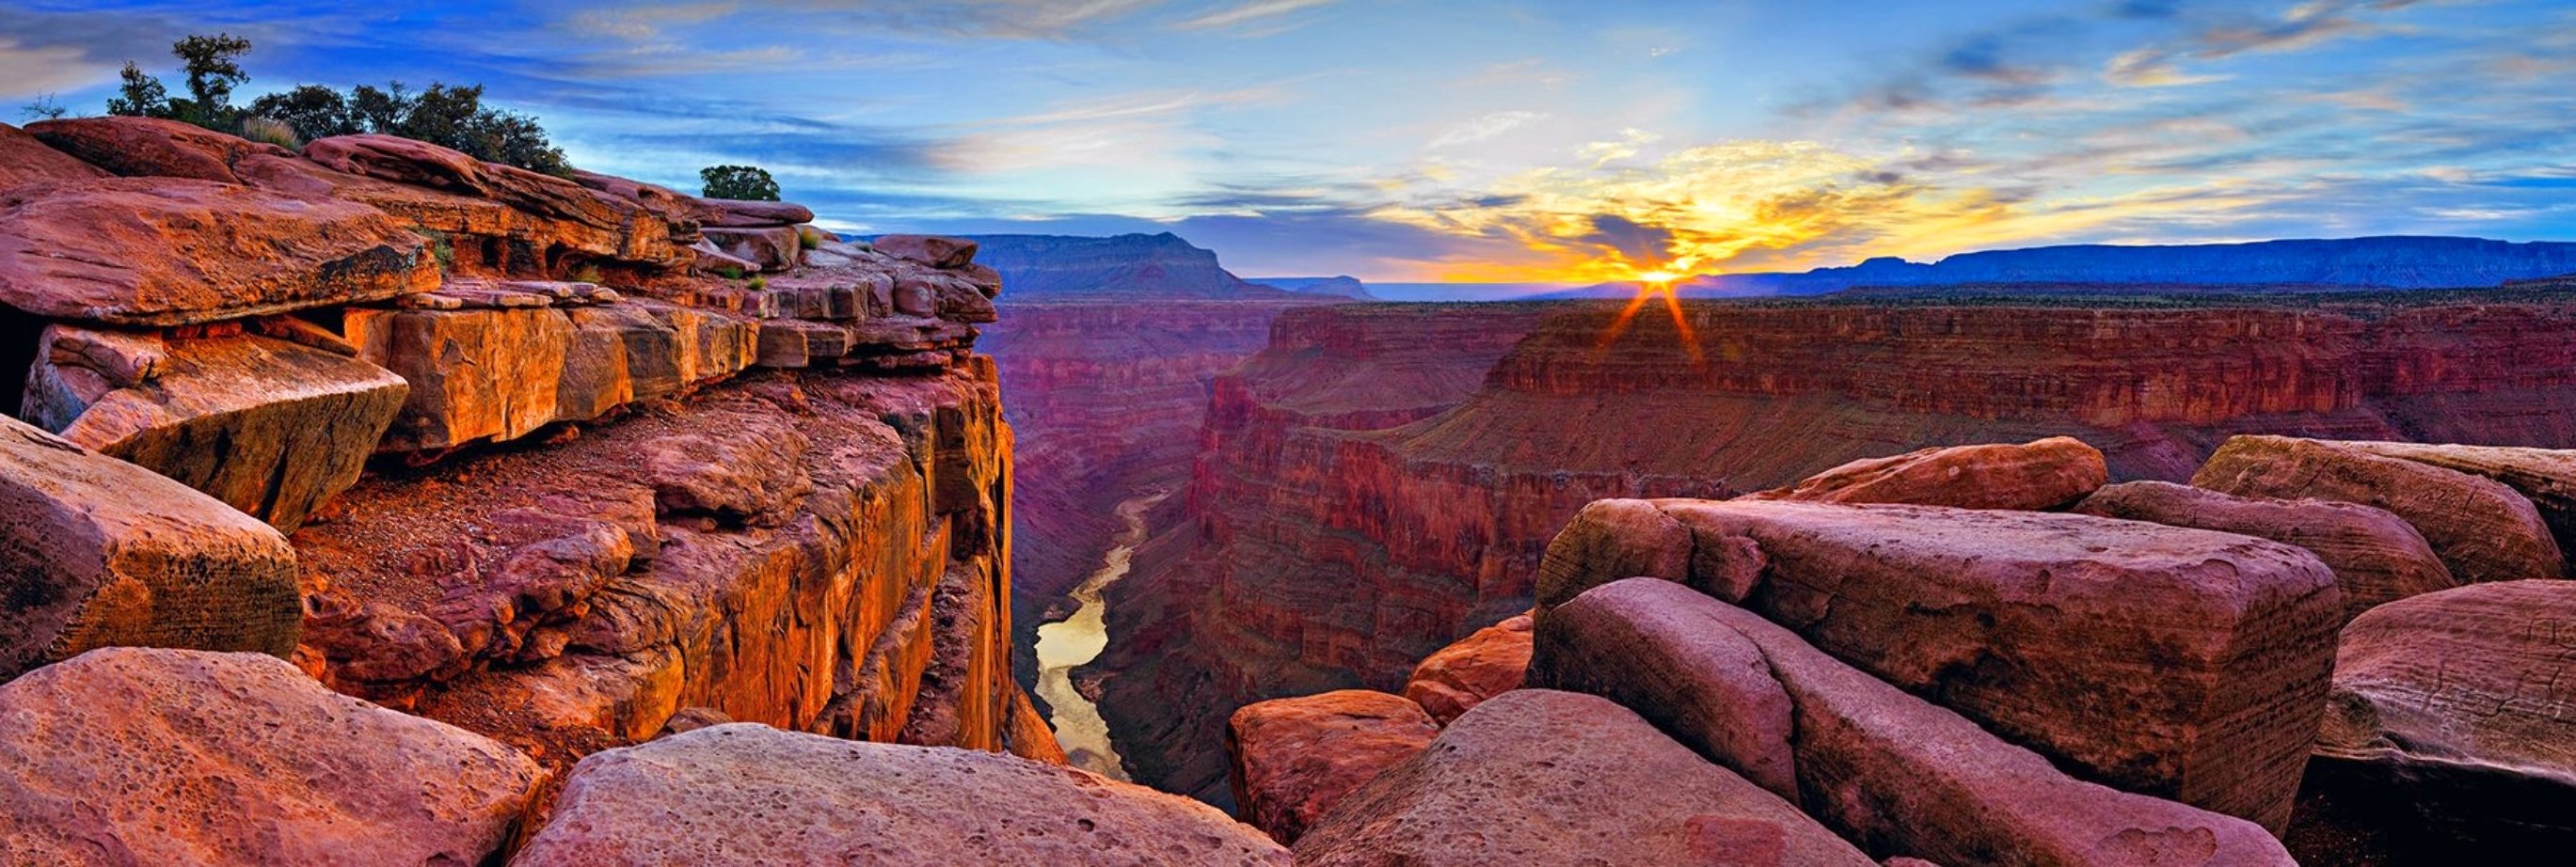 Blaze of Beauty (Grand Canyon, AZ) 2M  Panorama by Peter Lik